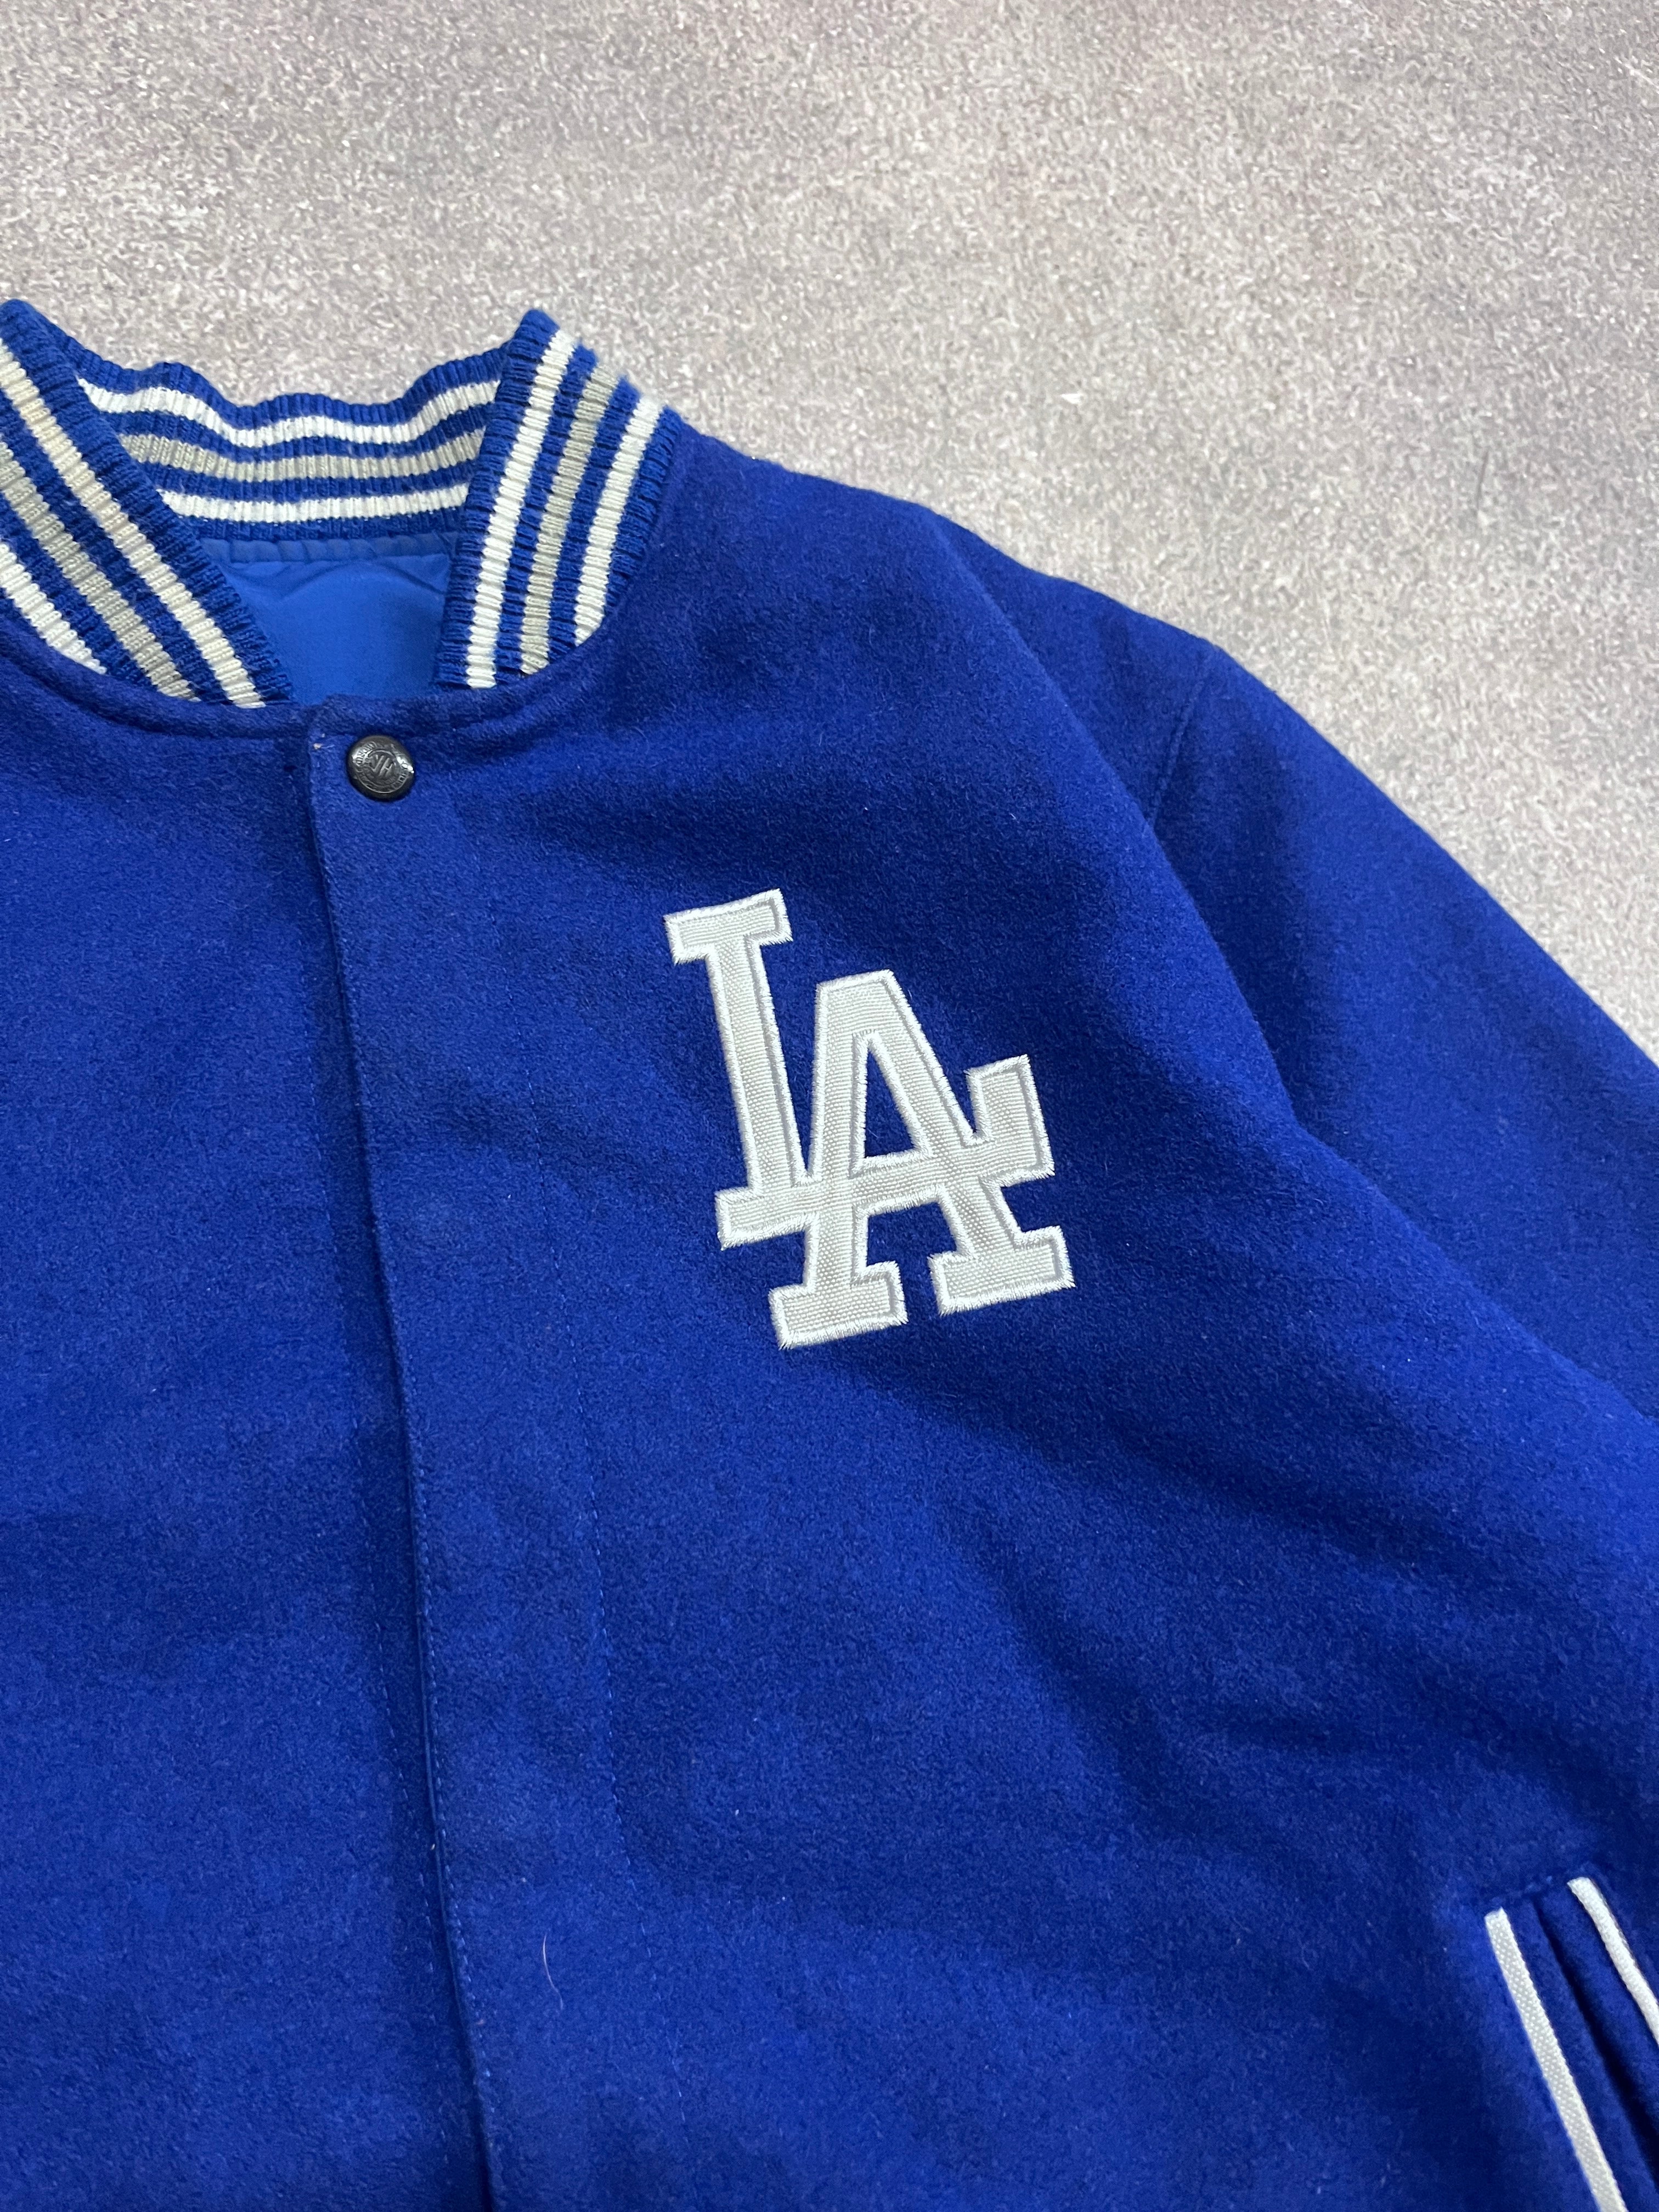 2 Vintage LA Dodgers Varsity Jacket Blue // Small - RHAGHOUSE VINTAGE